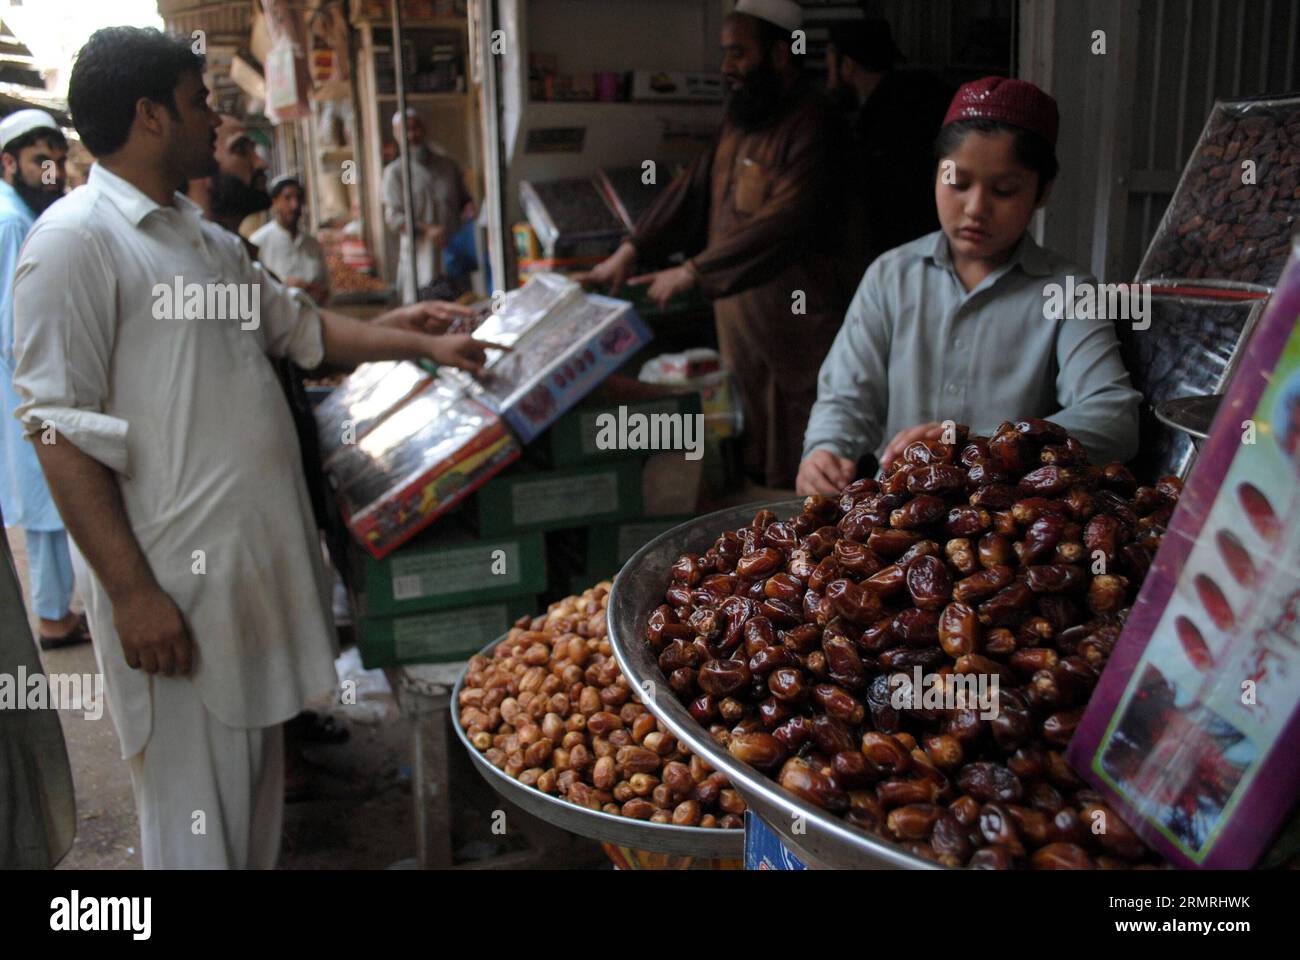 (140721) -- PESHAWAR, 21 de julio de 2014 (Xinhua) -- Los paquistaníes compran fechas en un mercado durante el mes sagrado de Ramadán en Peshawar, en el noroeste de Pakistán, el 21 de julio de 2014. La mayoría de los paquistaníes rompen su ayuno con fechas durante el Ramadán. (Xinhua/Umar Qayyum) PAKISTÁN-RAMADAN-FECHAS PUBLICATIONxNOTxINxCHN Peshawar JULIO 21 2014 DE JULIO LA mayoría de los pakistaníes rompen sus fechas casi con fechas durante el Ramadán XINHUA Umar Qayyum PUBLICATIONxRAVAN PAKISTAN EL 21 2014 de julio Foto de stock